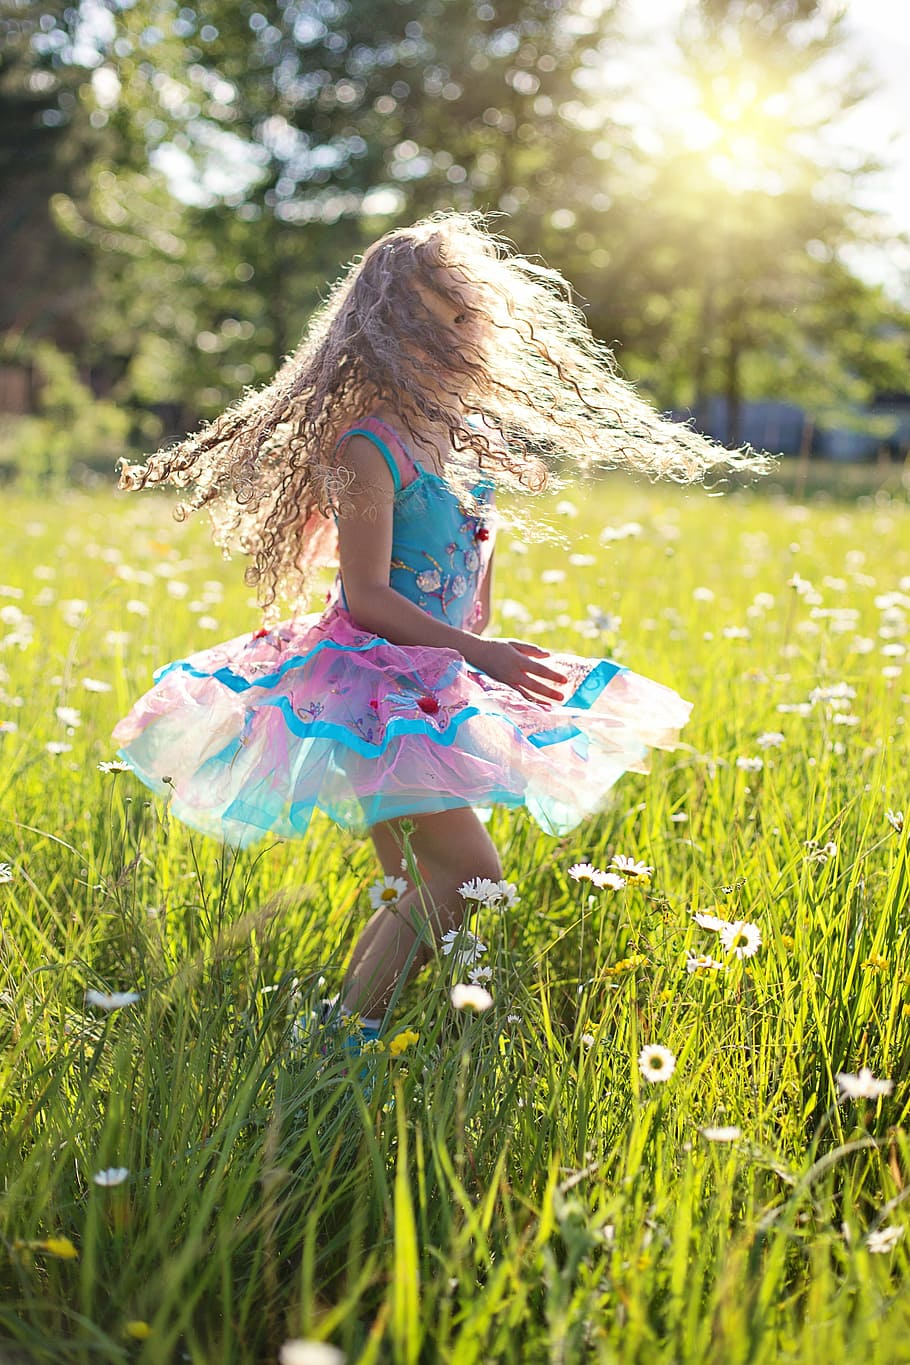 gadis, mengenakan, berpakaian, bidang rumput, menari, gadis kecil, memutar, berputar, balerina, masa kecil